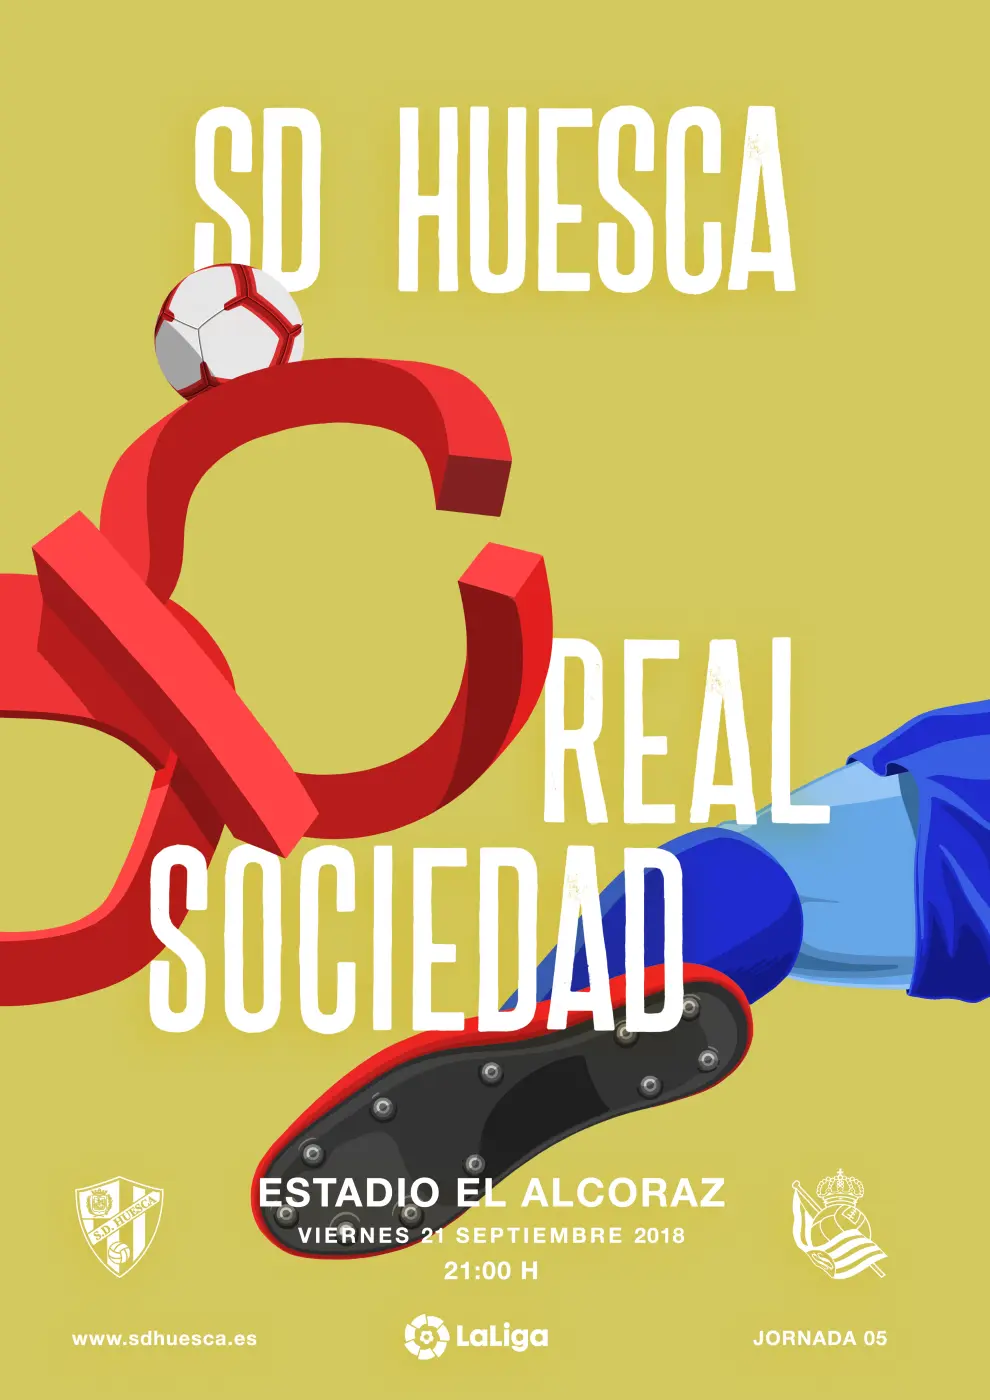 Los originales carteles de los partidos de la SD Huesca